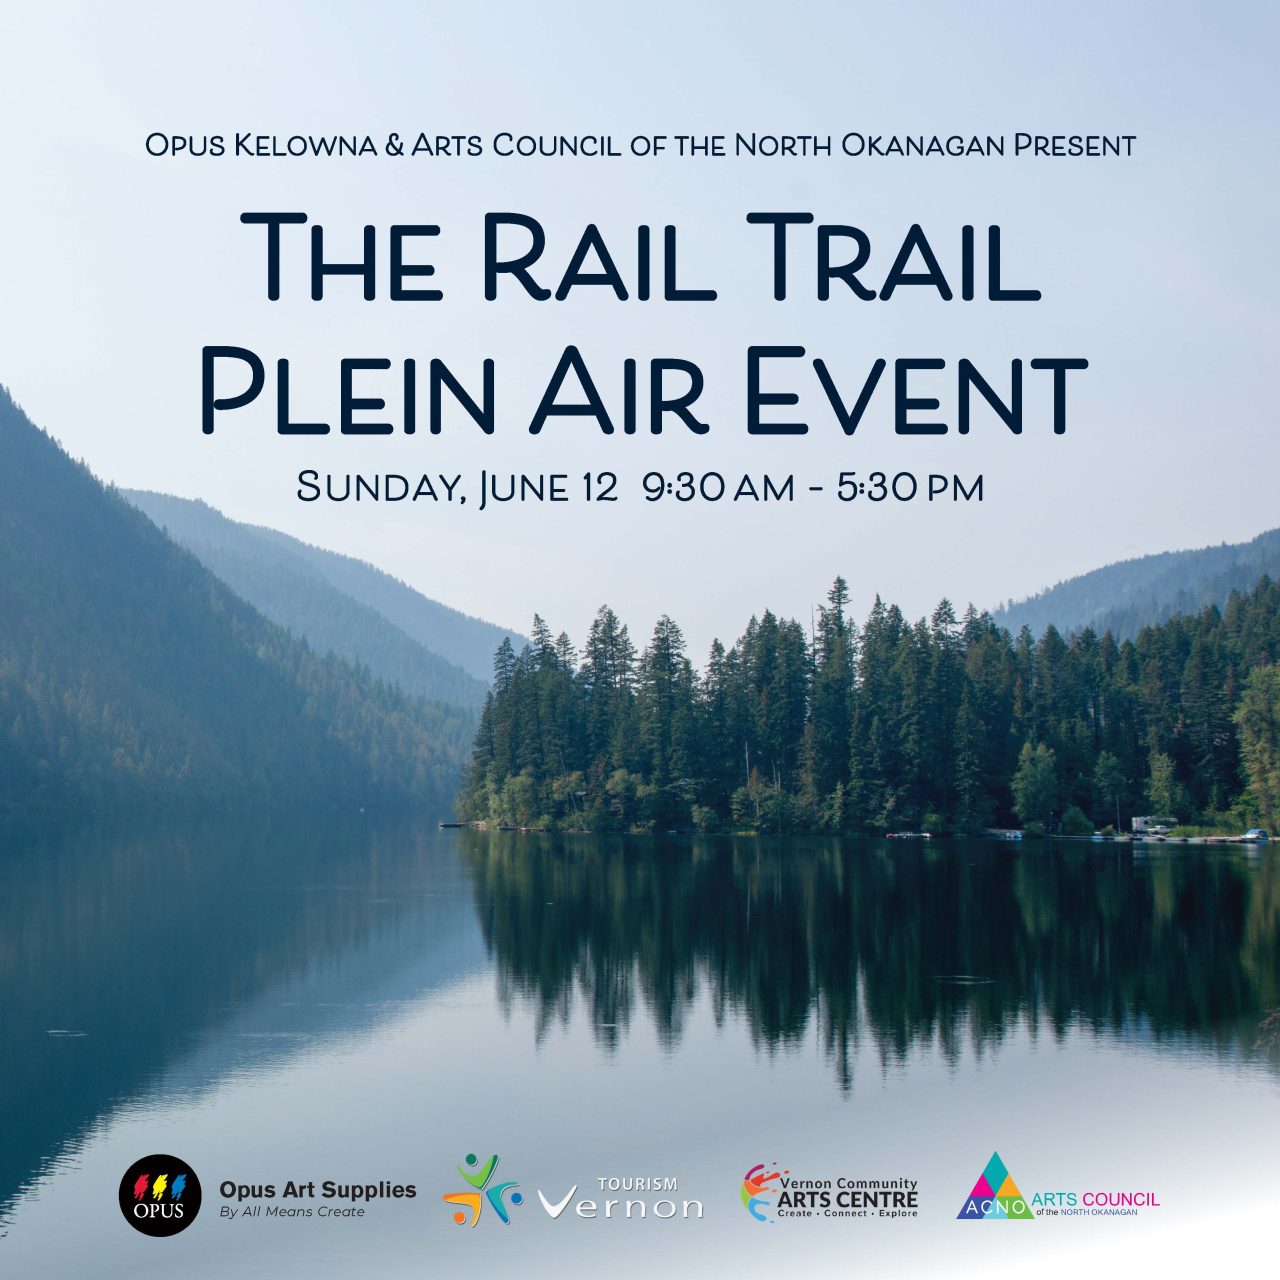 The Rail Trail Plein Air Event Arts Council of the North Okanagan